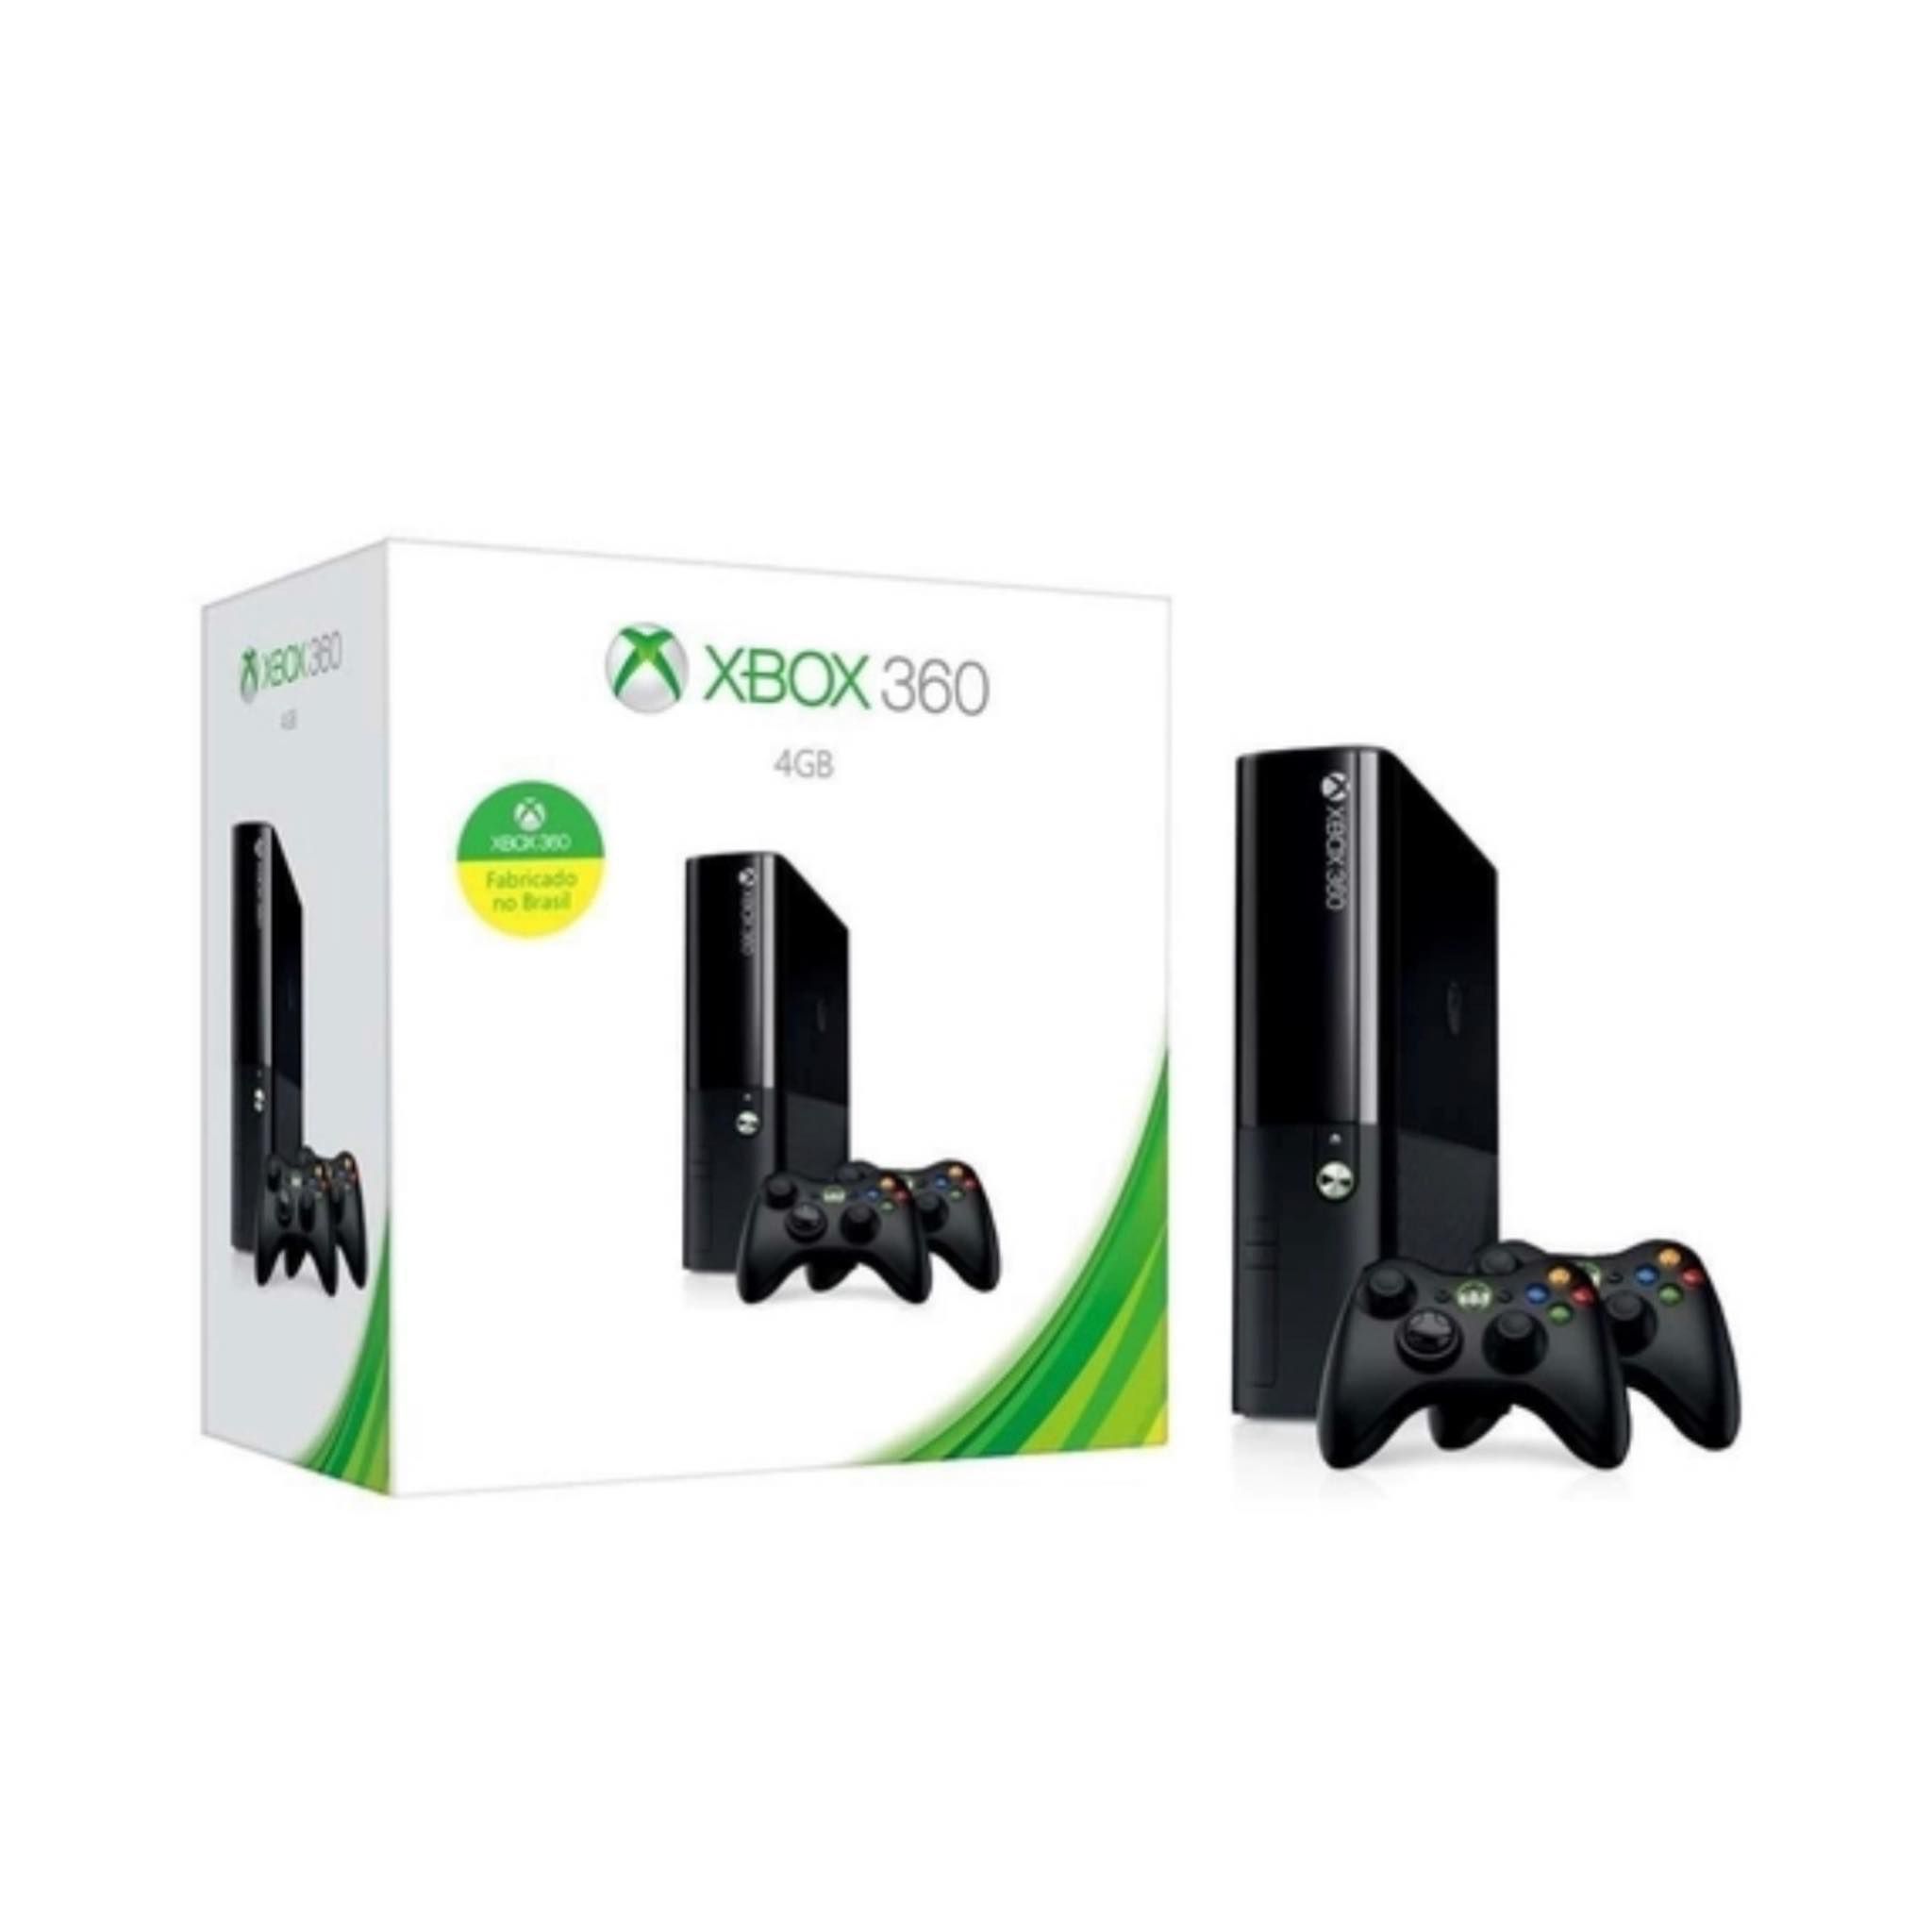 Xbox 360 desbloqueado com dois controles